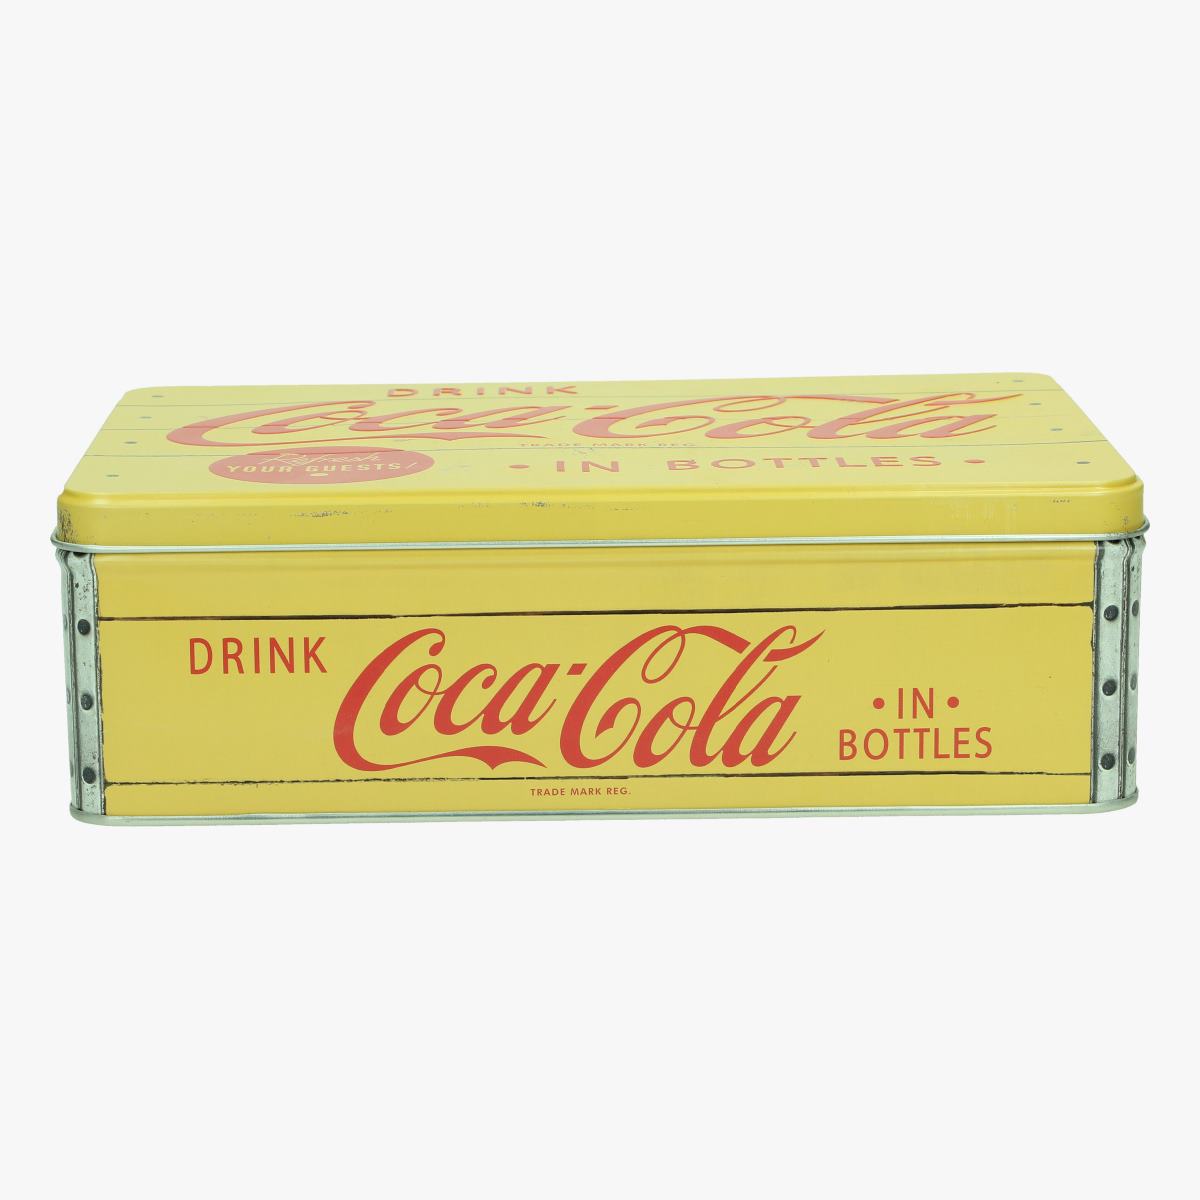 Afbeeldingen van blikken doos coca cola repro